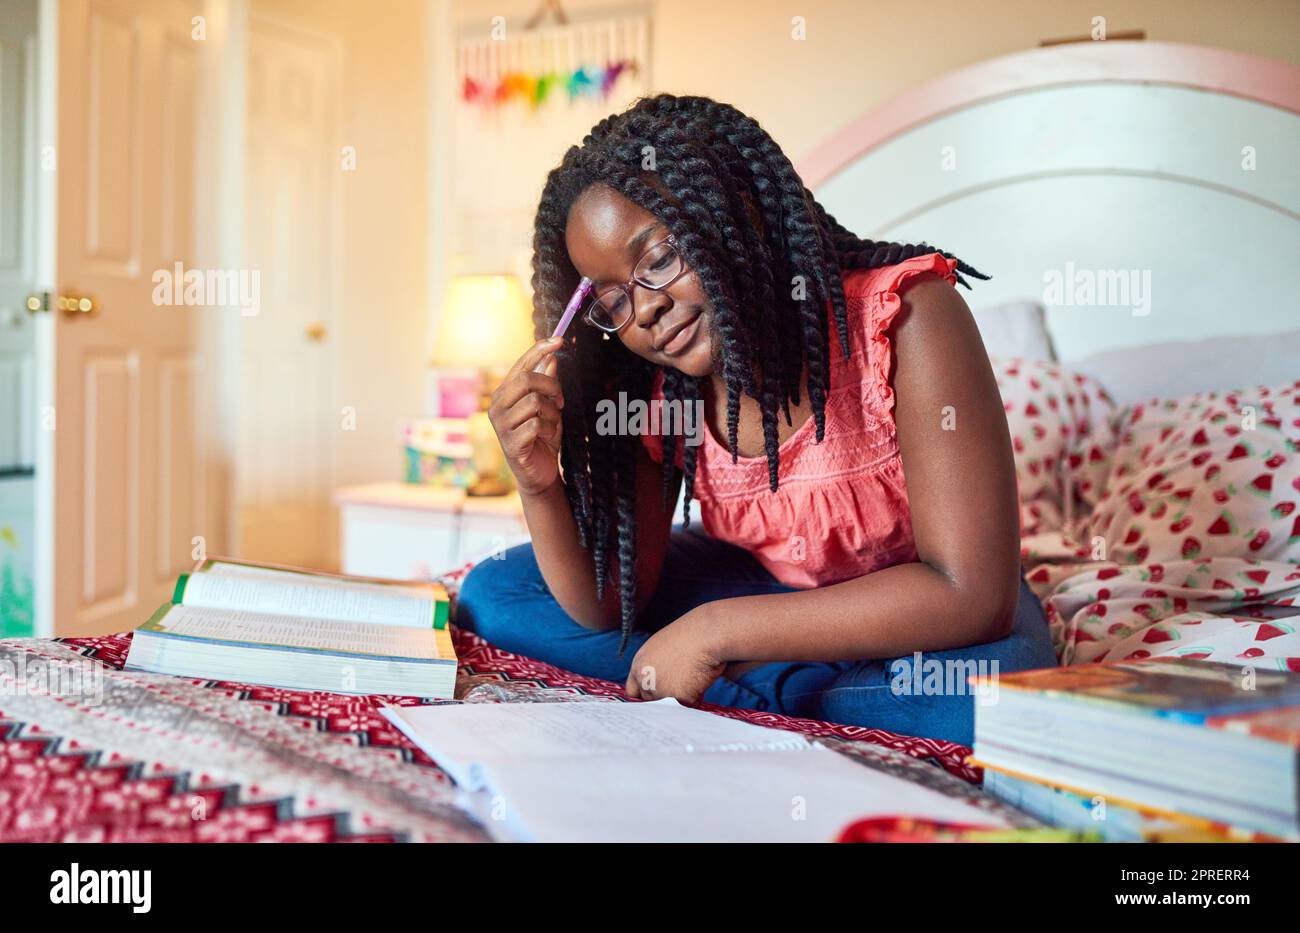 Elle prend son travail scolaire au sérieux. Une adorable petite fille qui fait ses devoirs sur son lit dans sa chambre. Banque D'Images